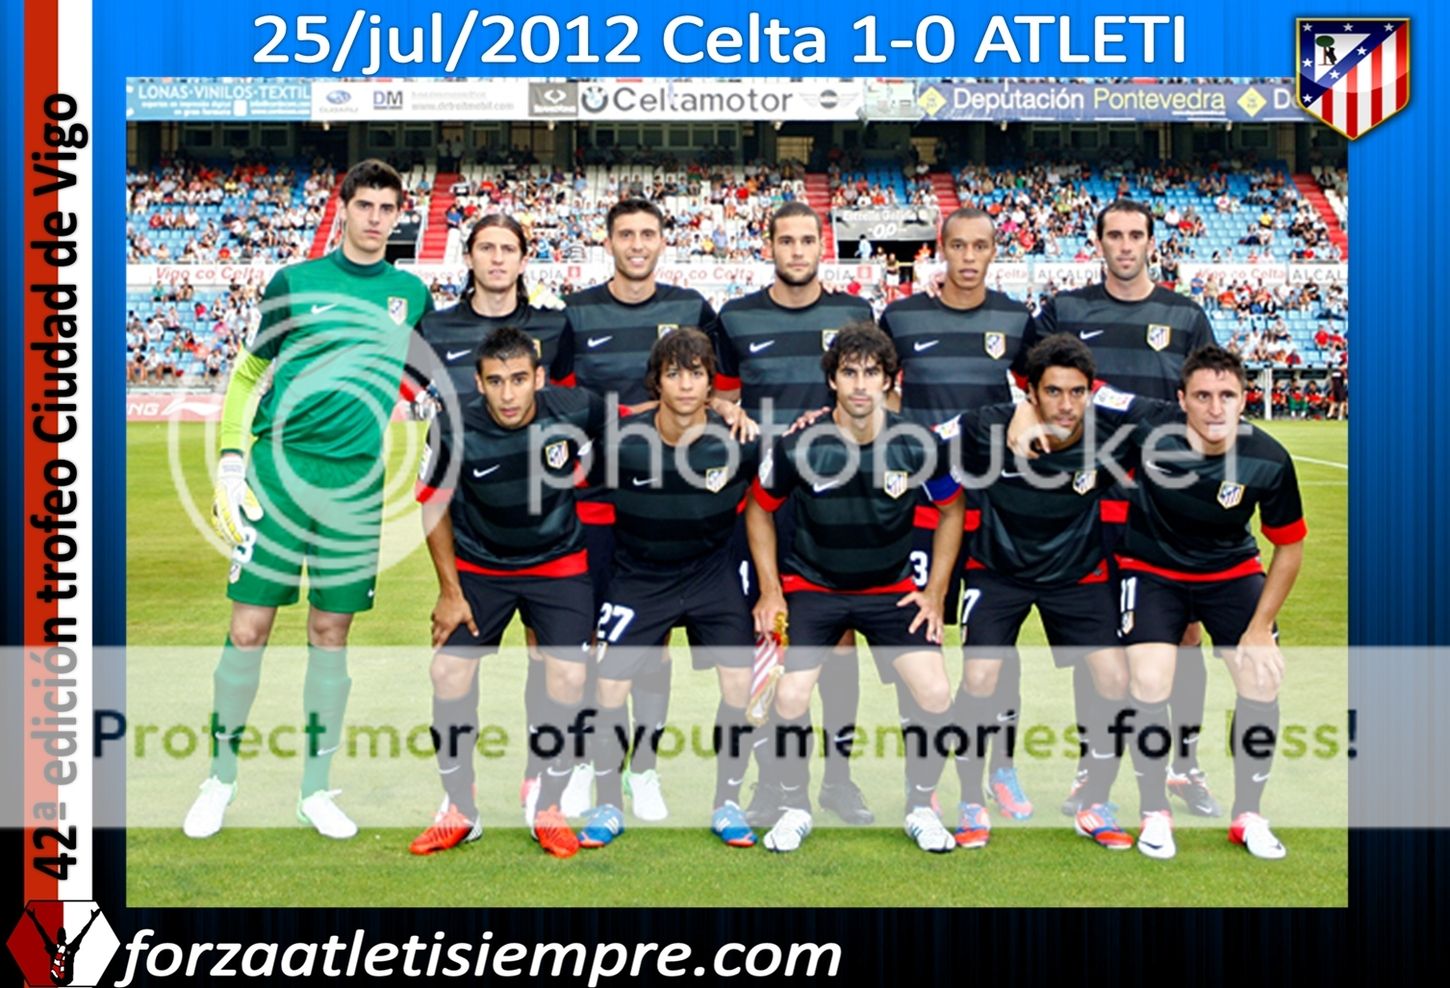 Celta 1-0 Atlético - El Atlético decepciona ante un Celta que se lleva ... 007Copiar-2